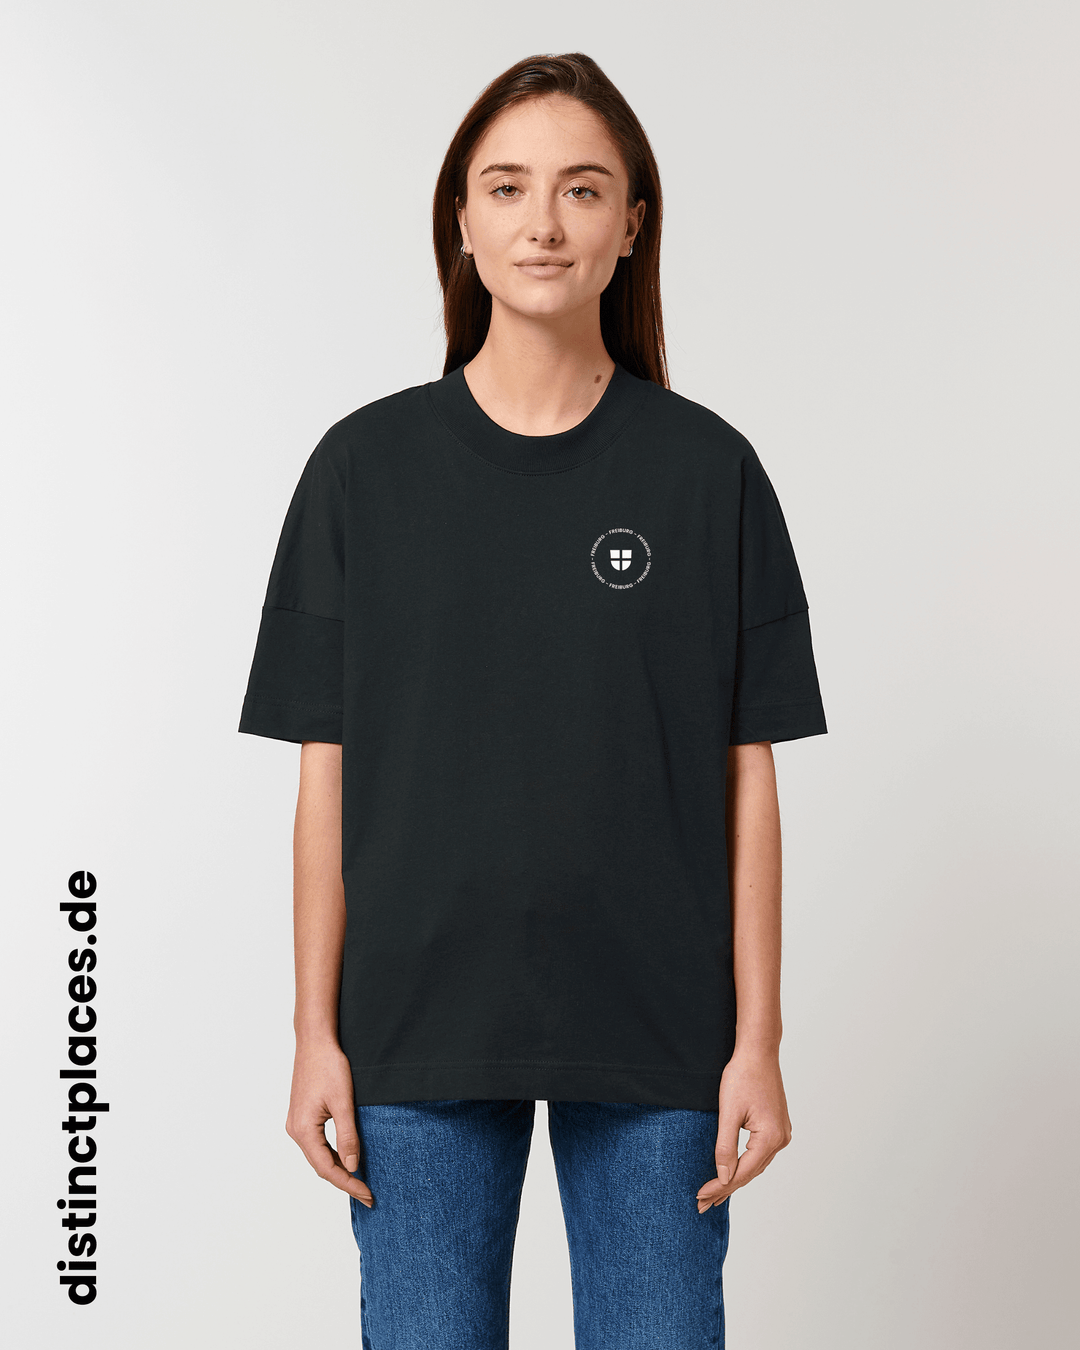 Frau von vorne trägt schwarzes fairtrade, vegan und bio-baumwoll Oversized T-Shirt mit einem minimalistischem weißen Logo, beziehungsweise Wappen und Schriftzug für Freiburg